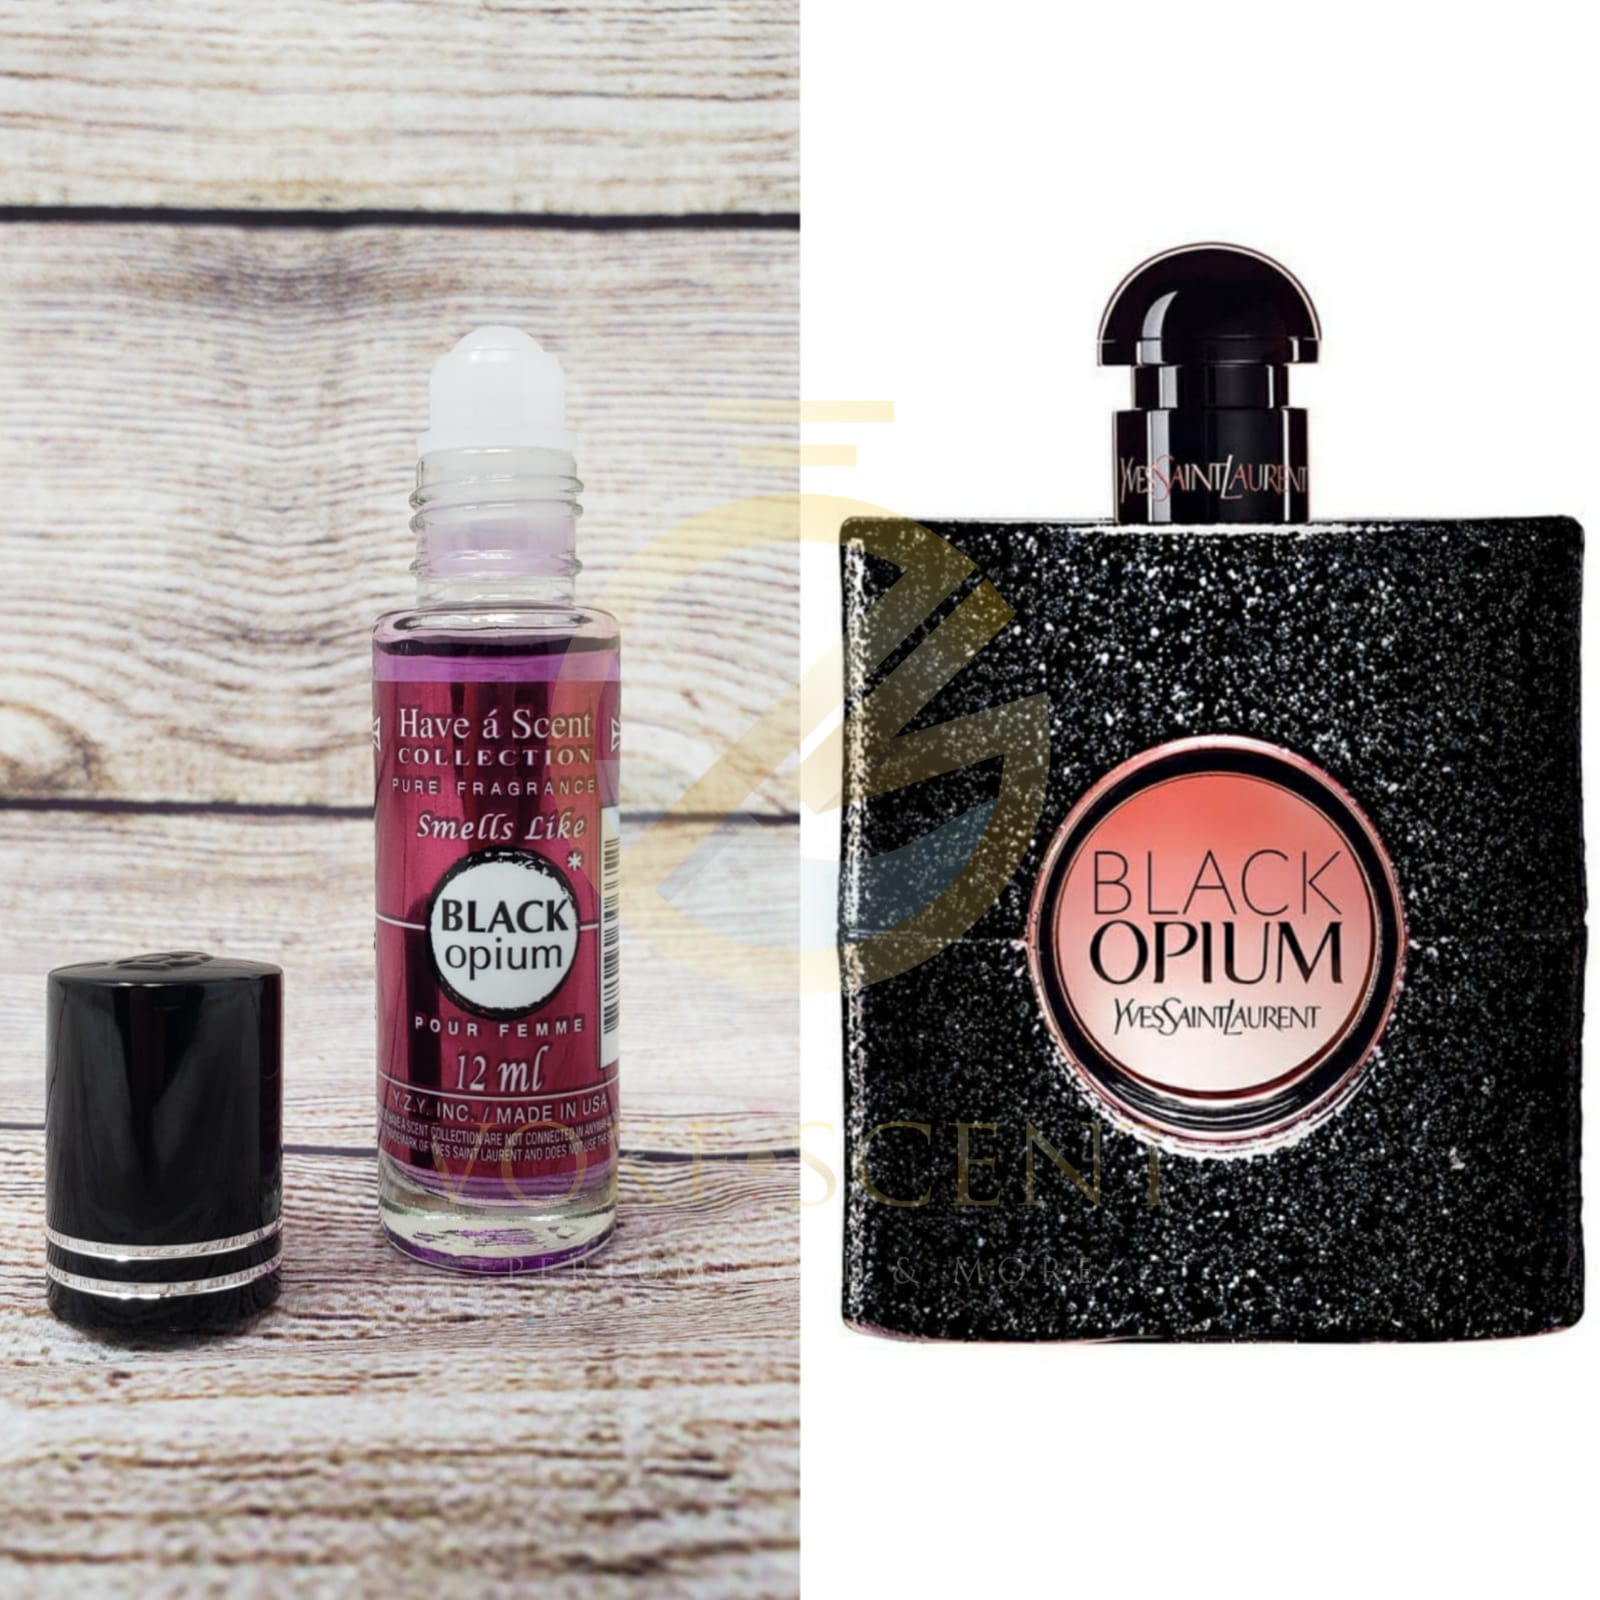  Yves Saint Laurent Black Opium Eau De Parfum Rollerball For  Women 0.34 Oz / 10 ml : Beauty & Personal Care